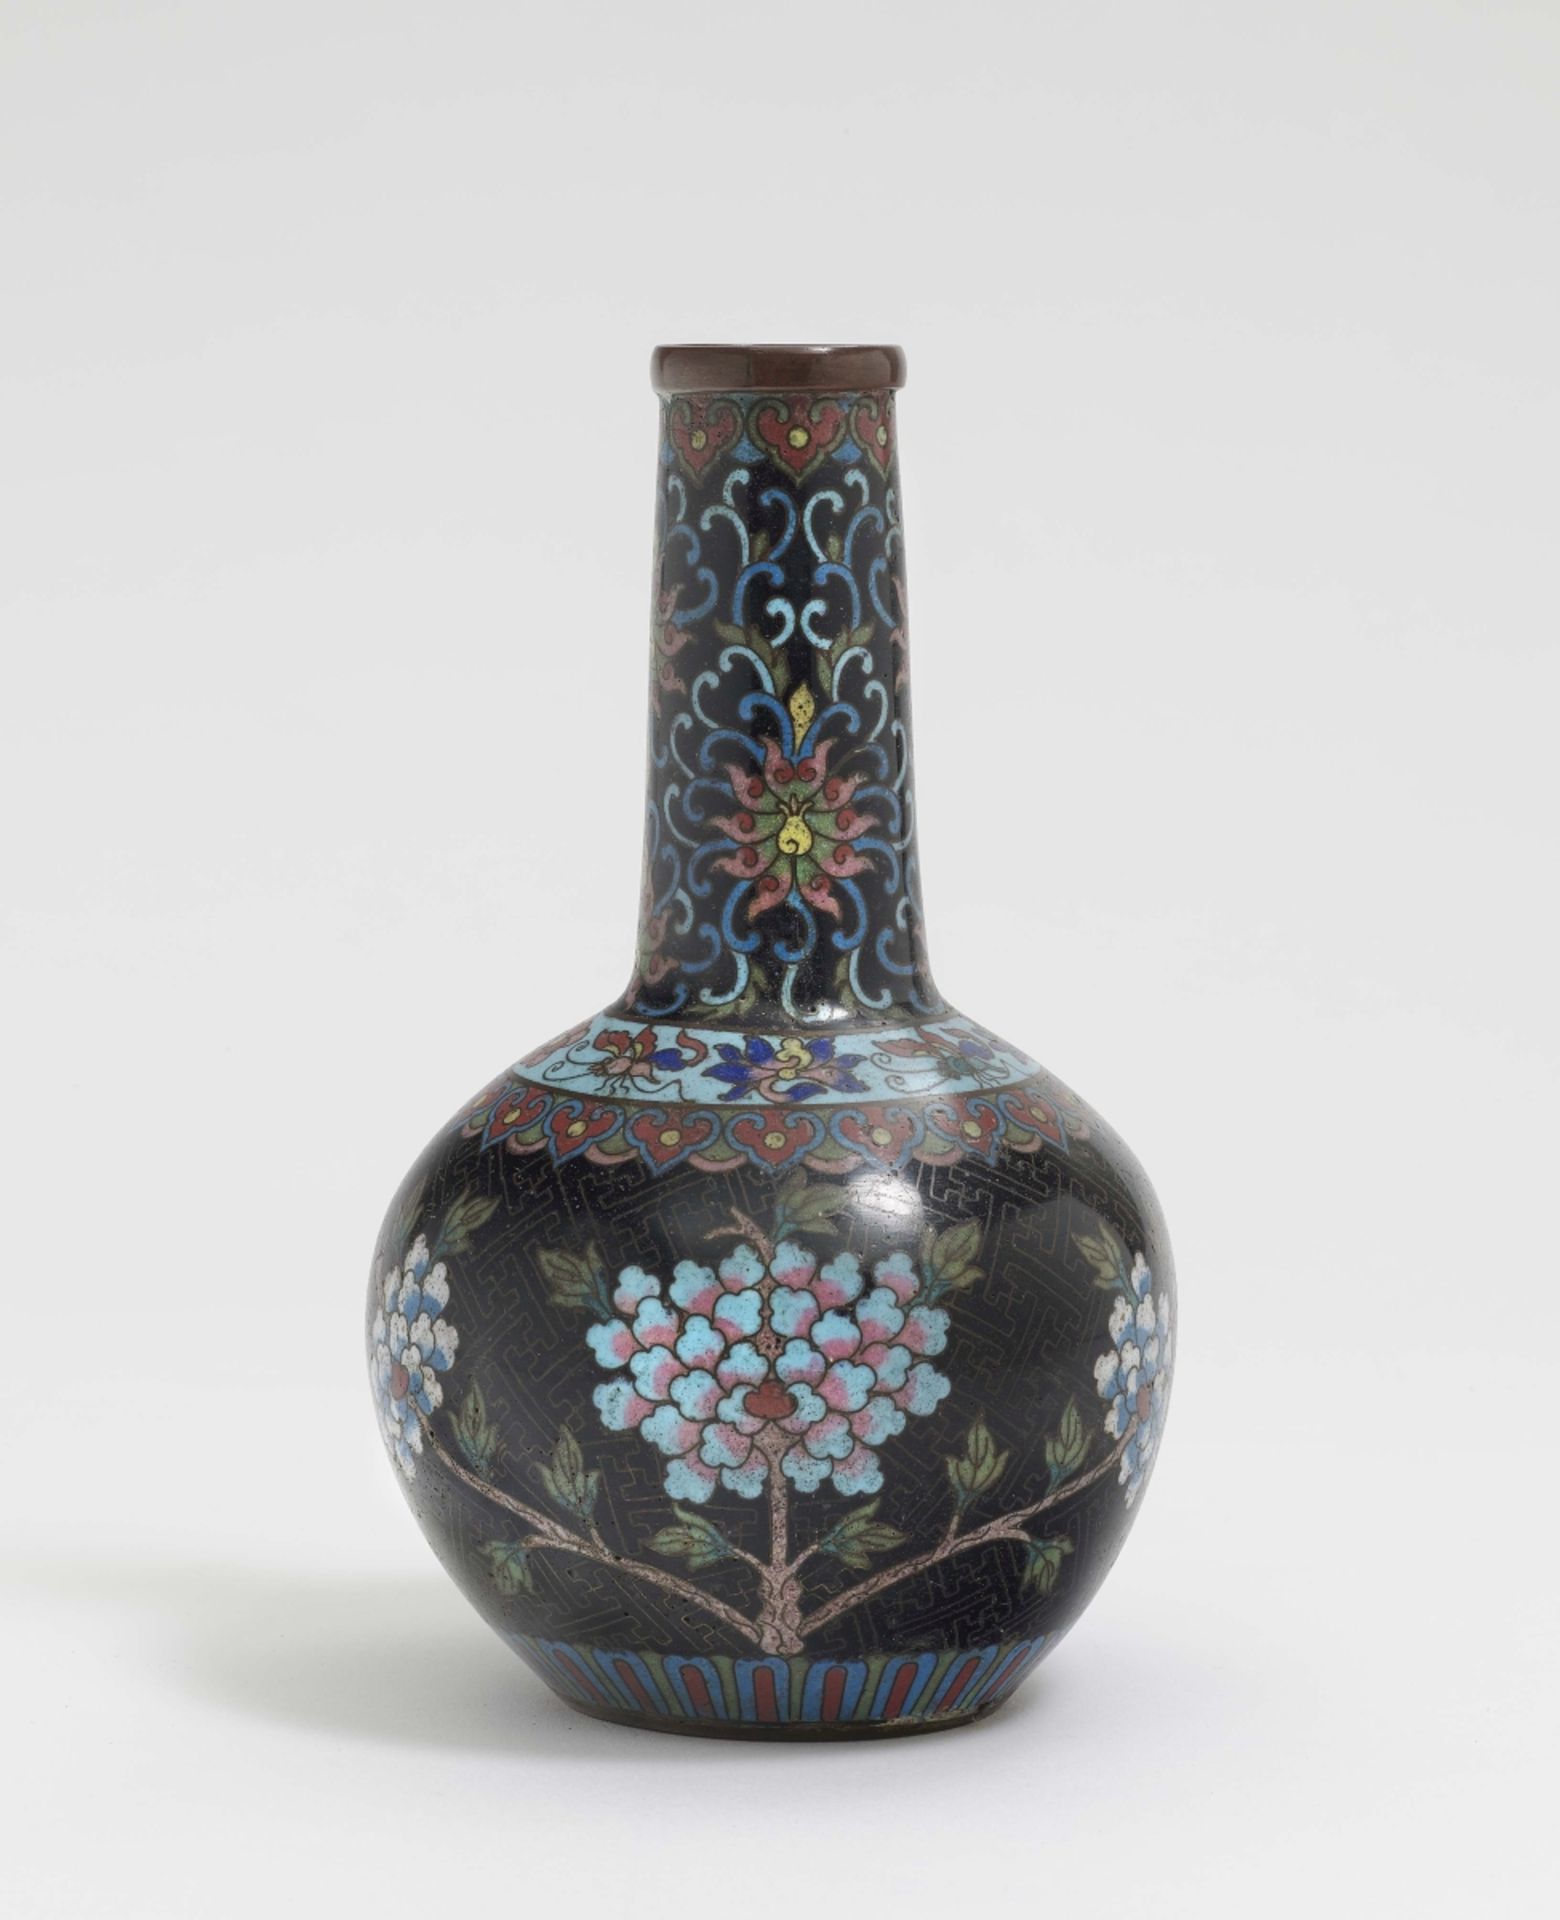 Cloisonné-Vase China Metall, Email. Keulenform. Bunter floraler Dekor auf schwarzem Fond. H. 18